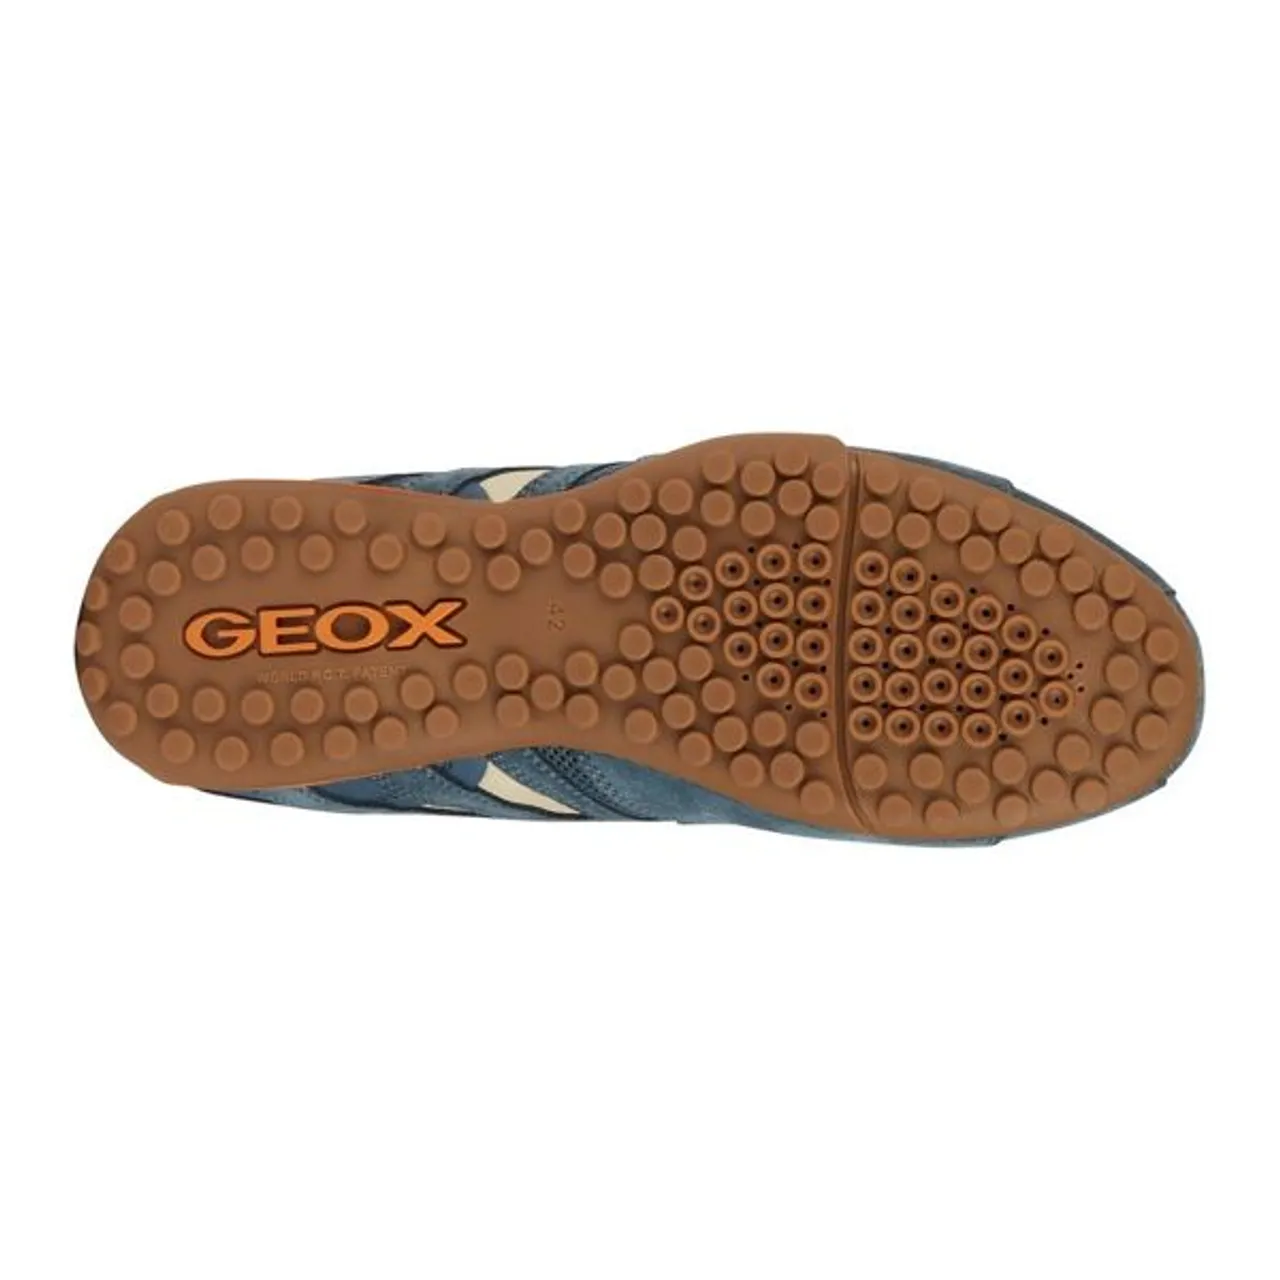 Sneaker GEOX "UOMO SNAKE A" Gr. 48, blau (blau, taupe) Herren Schuhe Stoffschuhe mit stylischem Muster, Freizeitschuh, Halbschuh, Schnürschuh